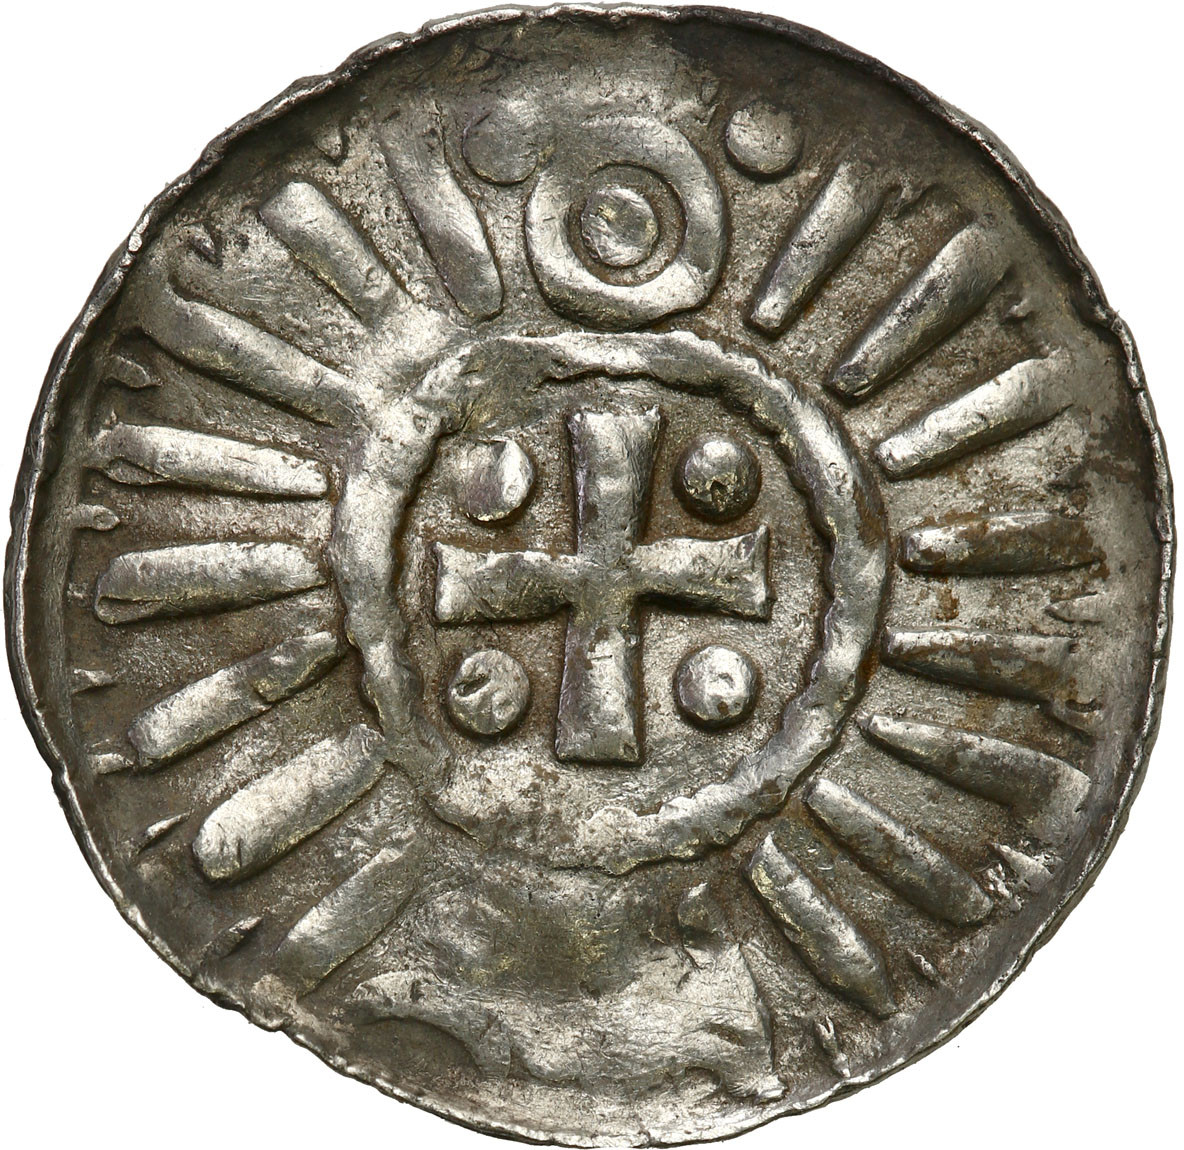 Niemcy, Saksonia. Anonimowy denar krzyżowy X wiek